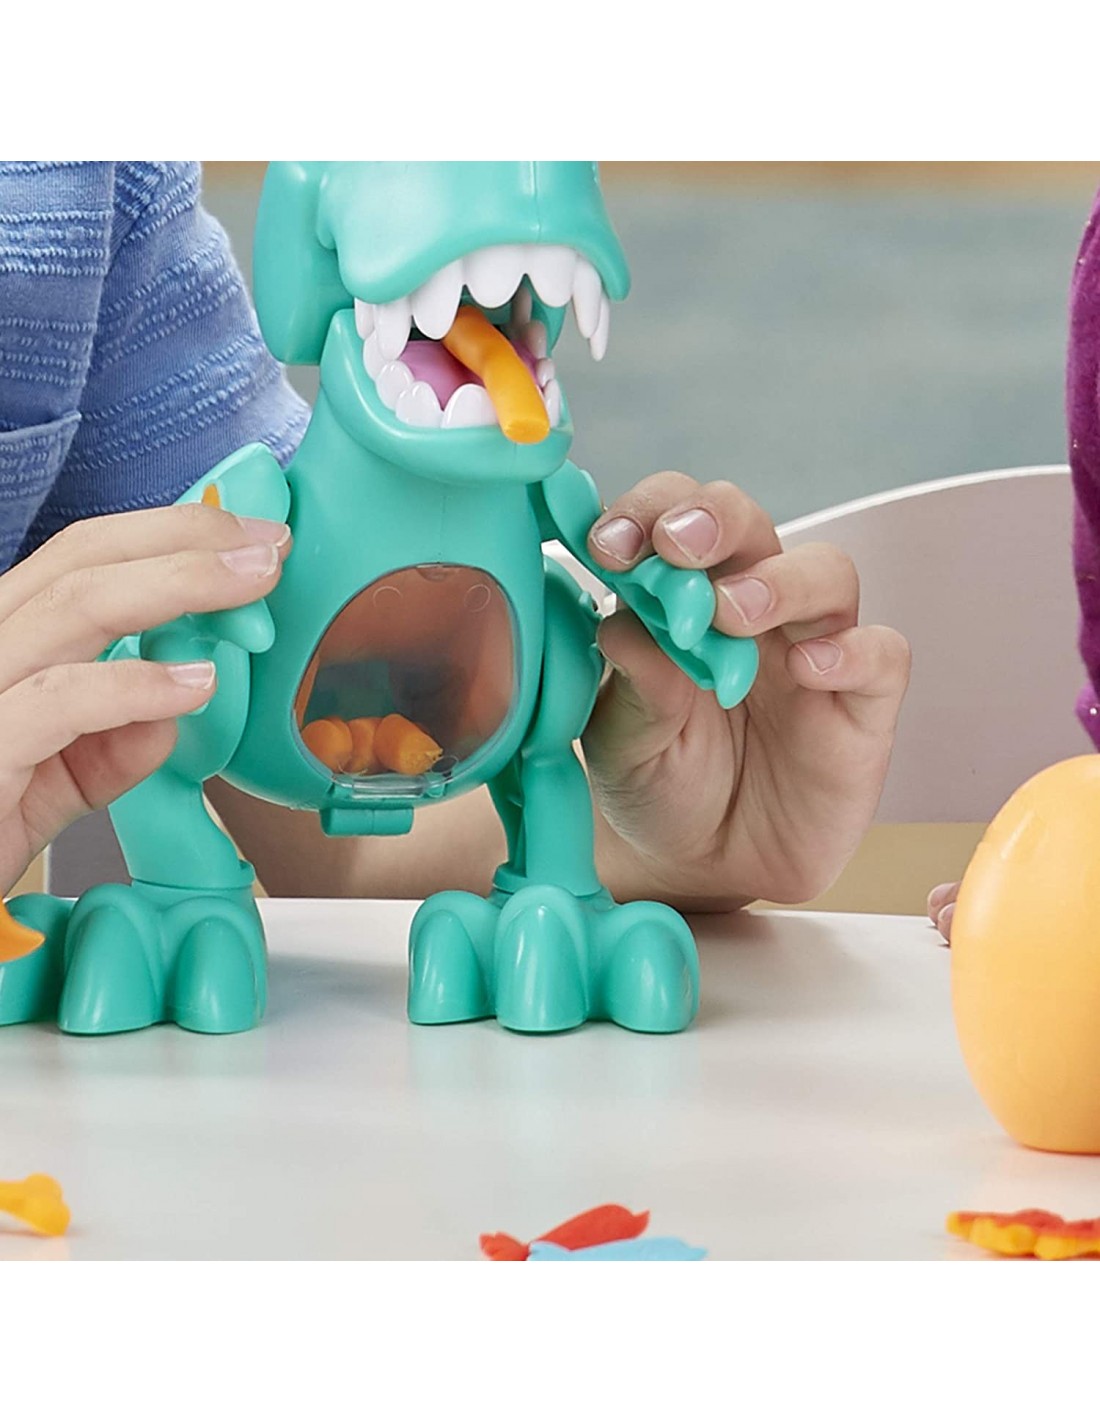 Play-Doh Crunchin T REX F1504 - Play-Doh